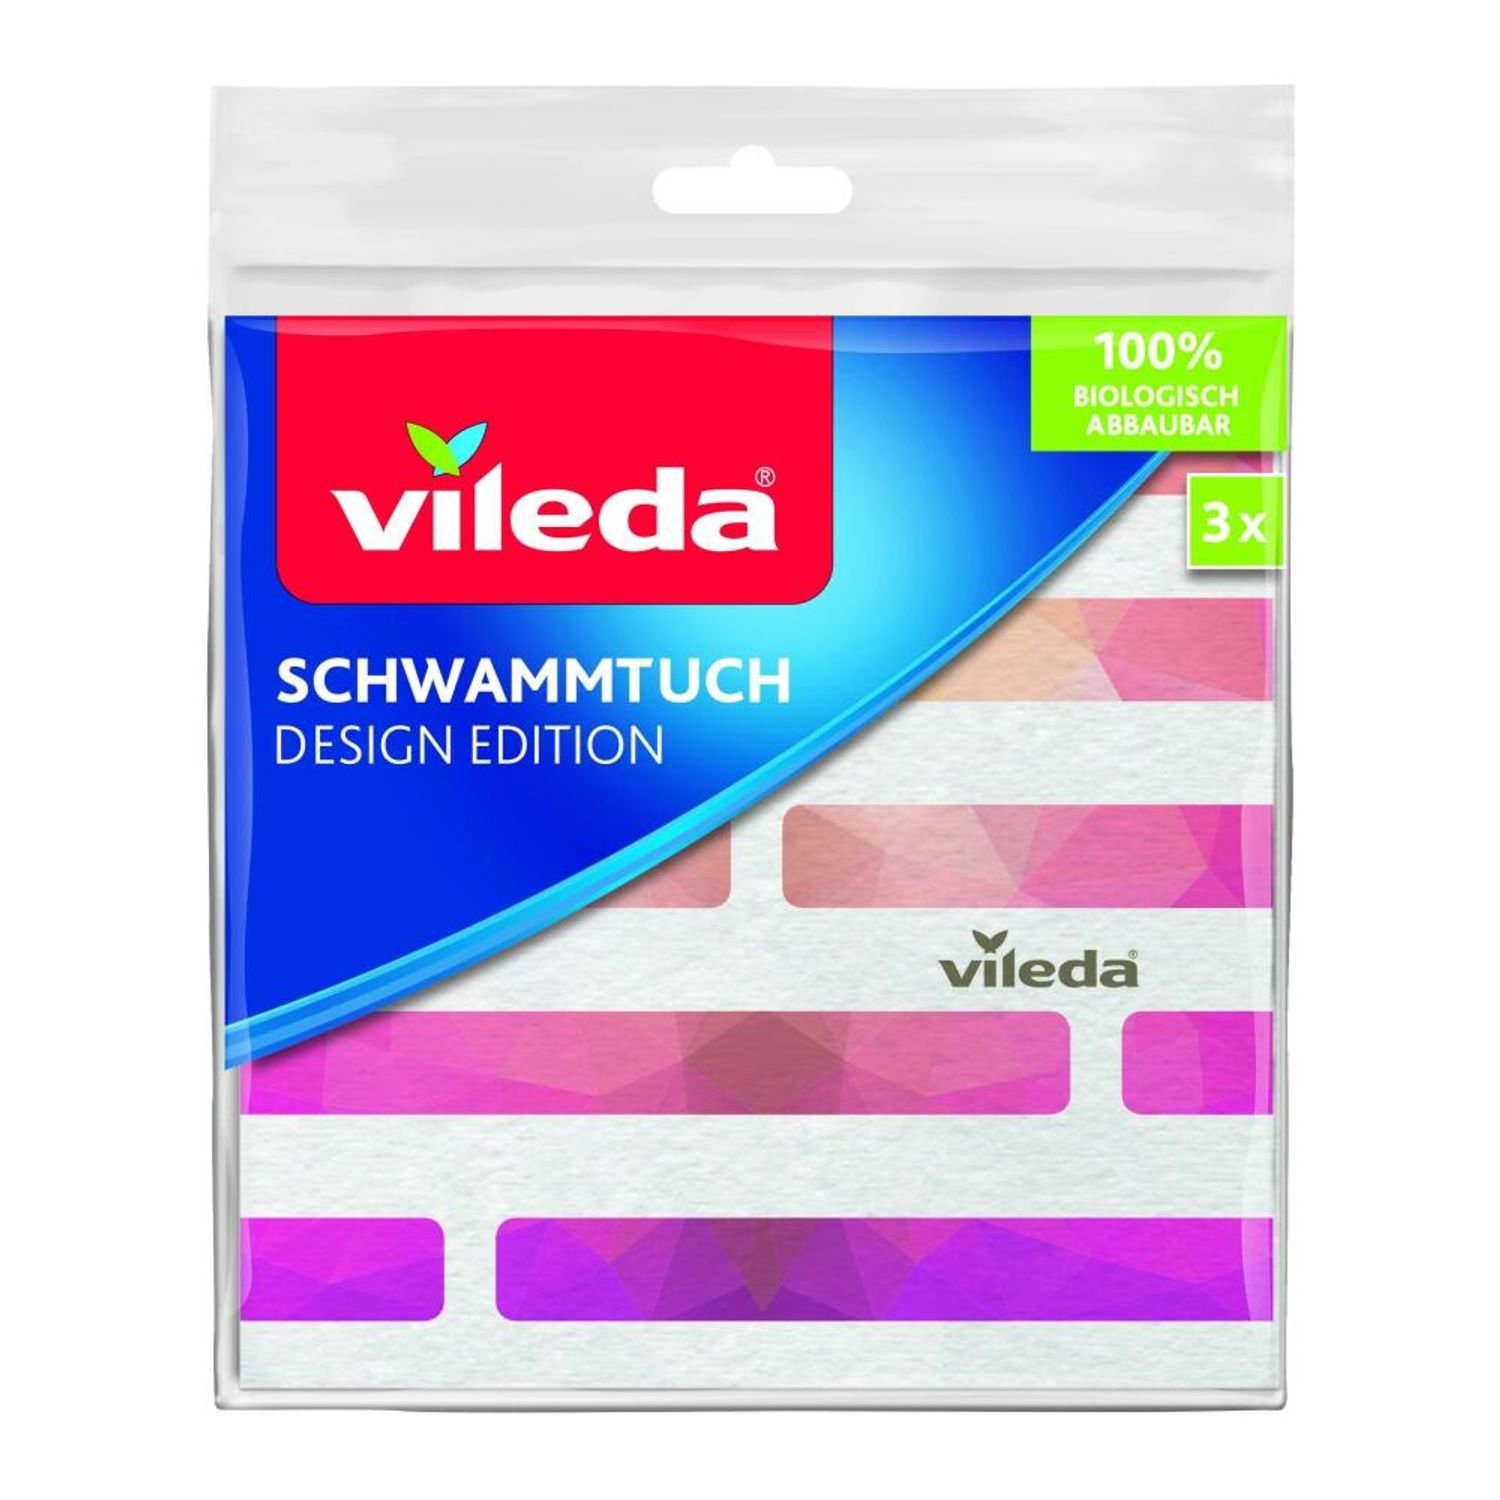 VILEDA 12x 3er abbaubar Wischbezug biologisch 100% Stück Vileda Lappen Schwammtuch 36